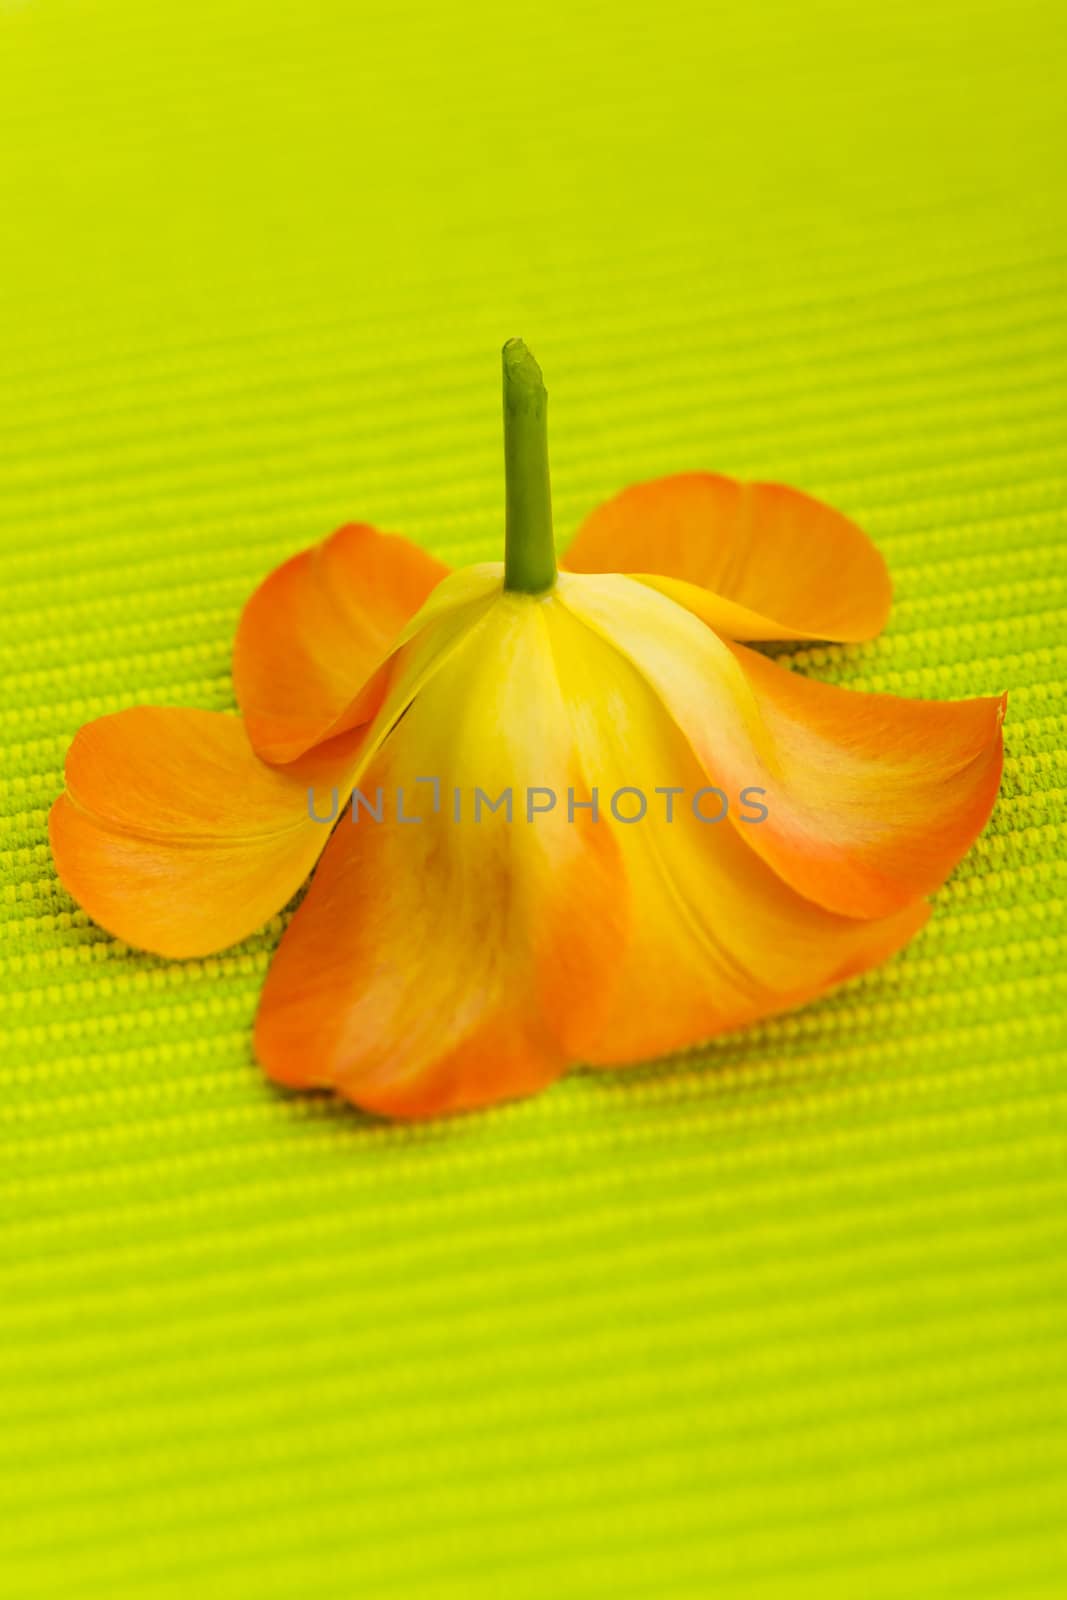 Tulip flower by mjp